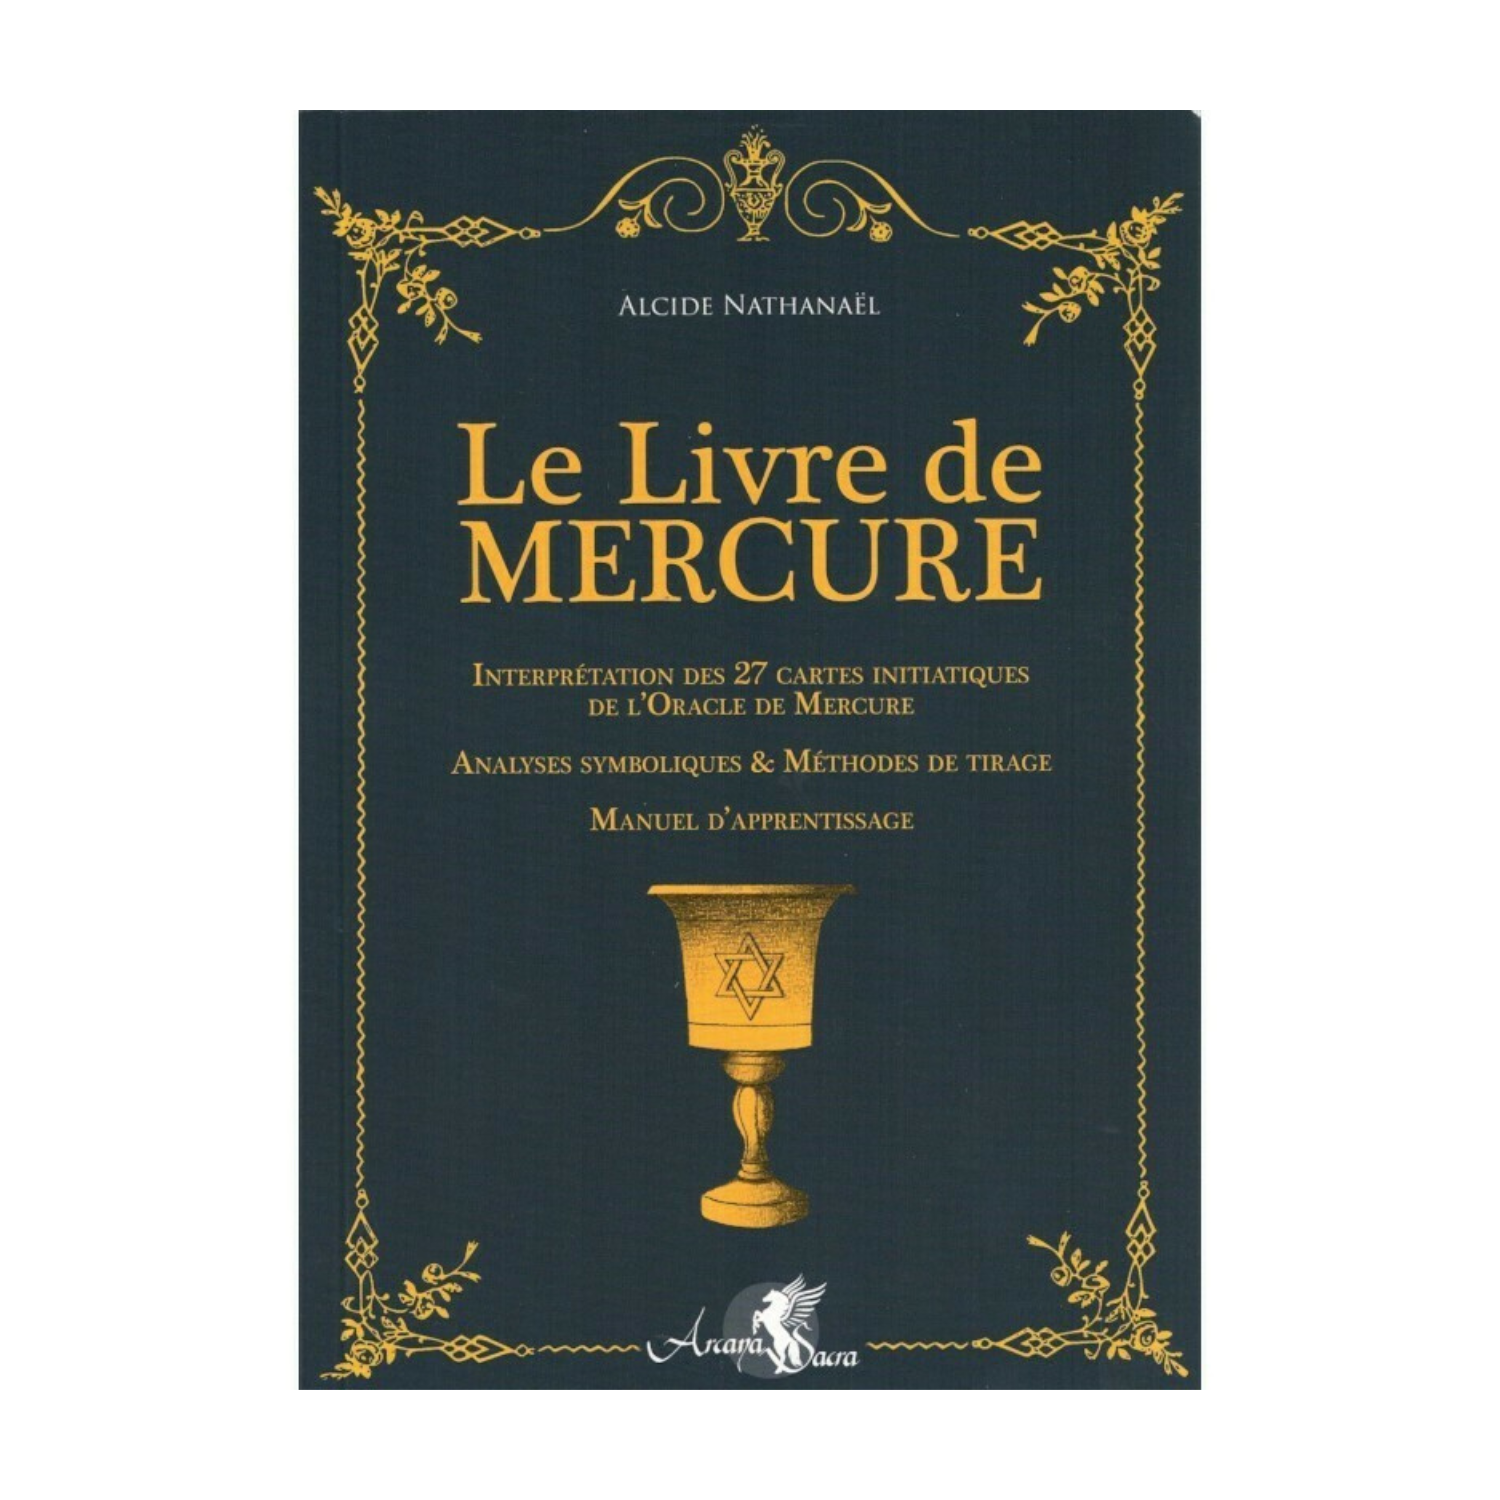 Le livre de Mercure